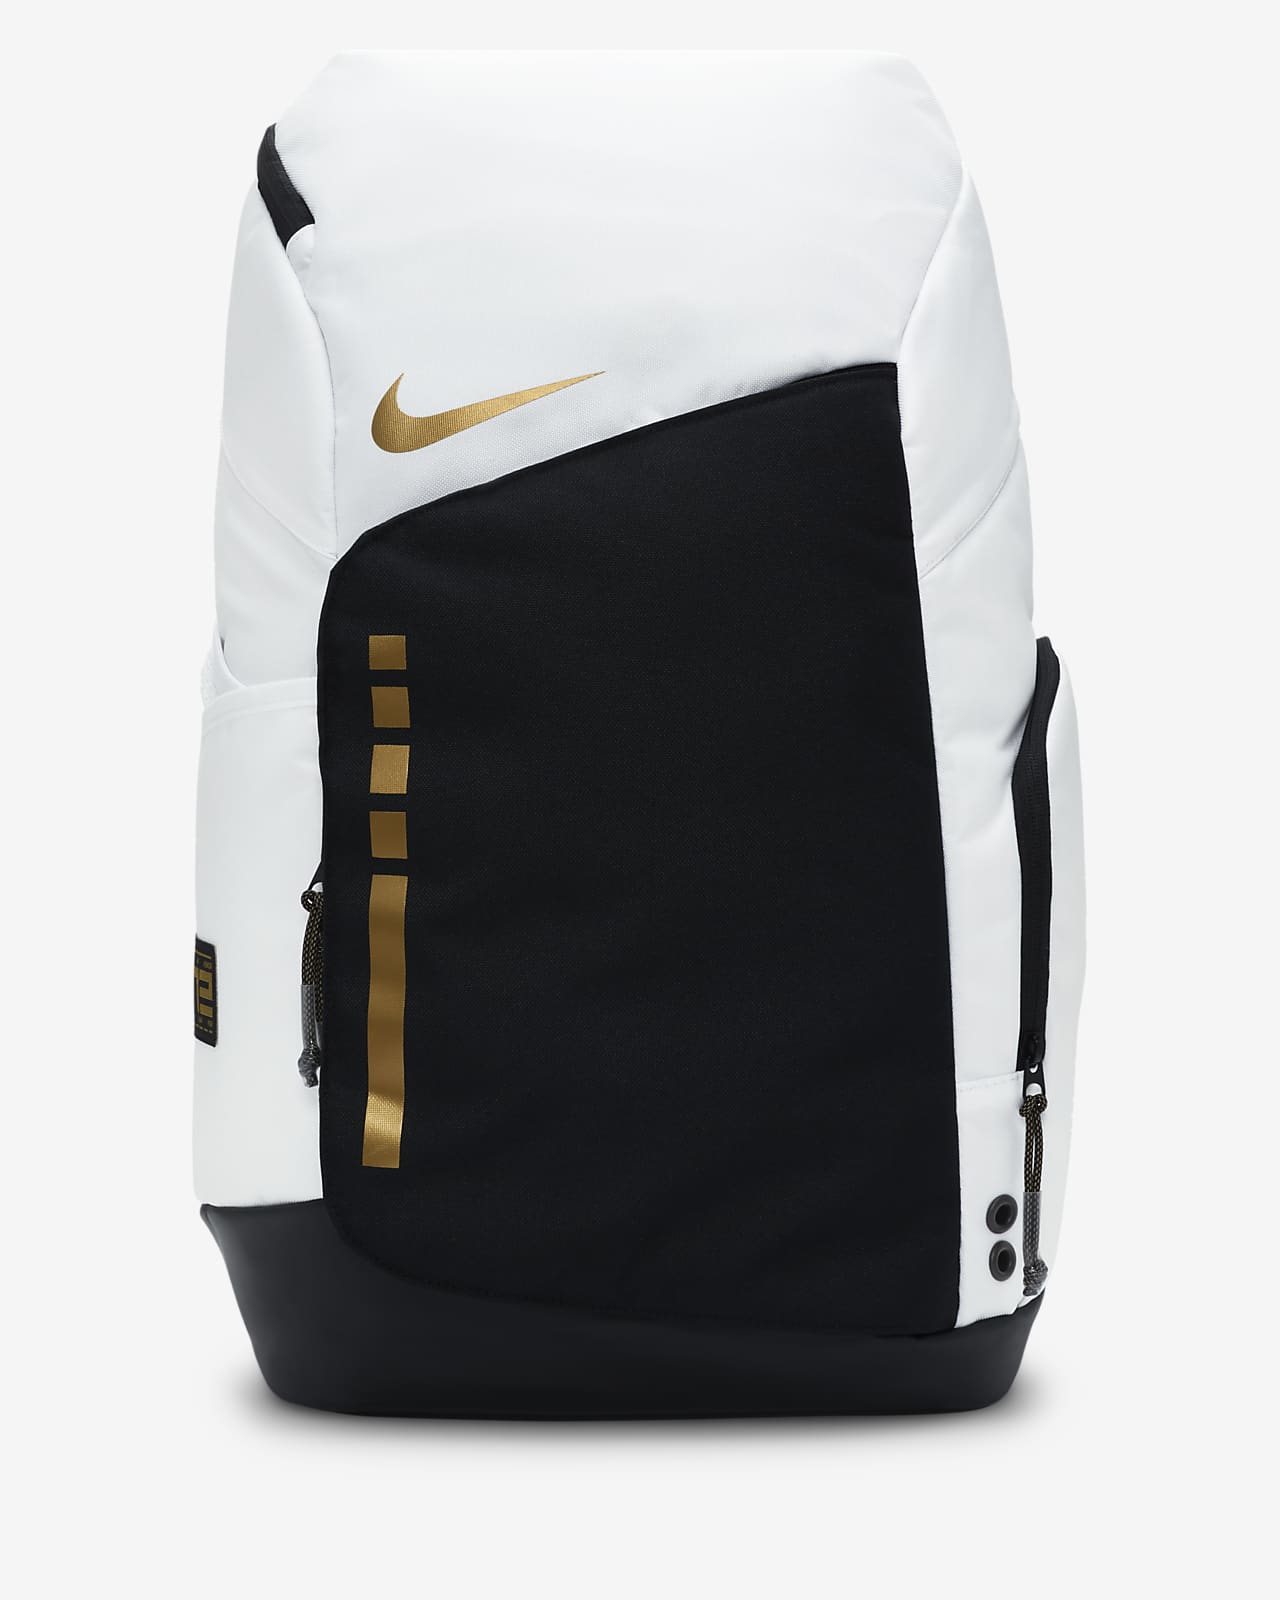 Nike Elite Basketball Backpack — Ignite Hoops